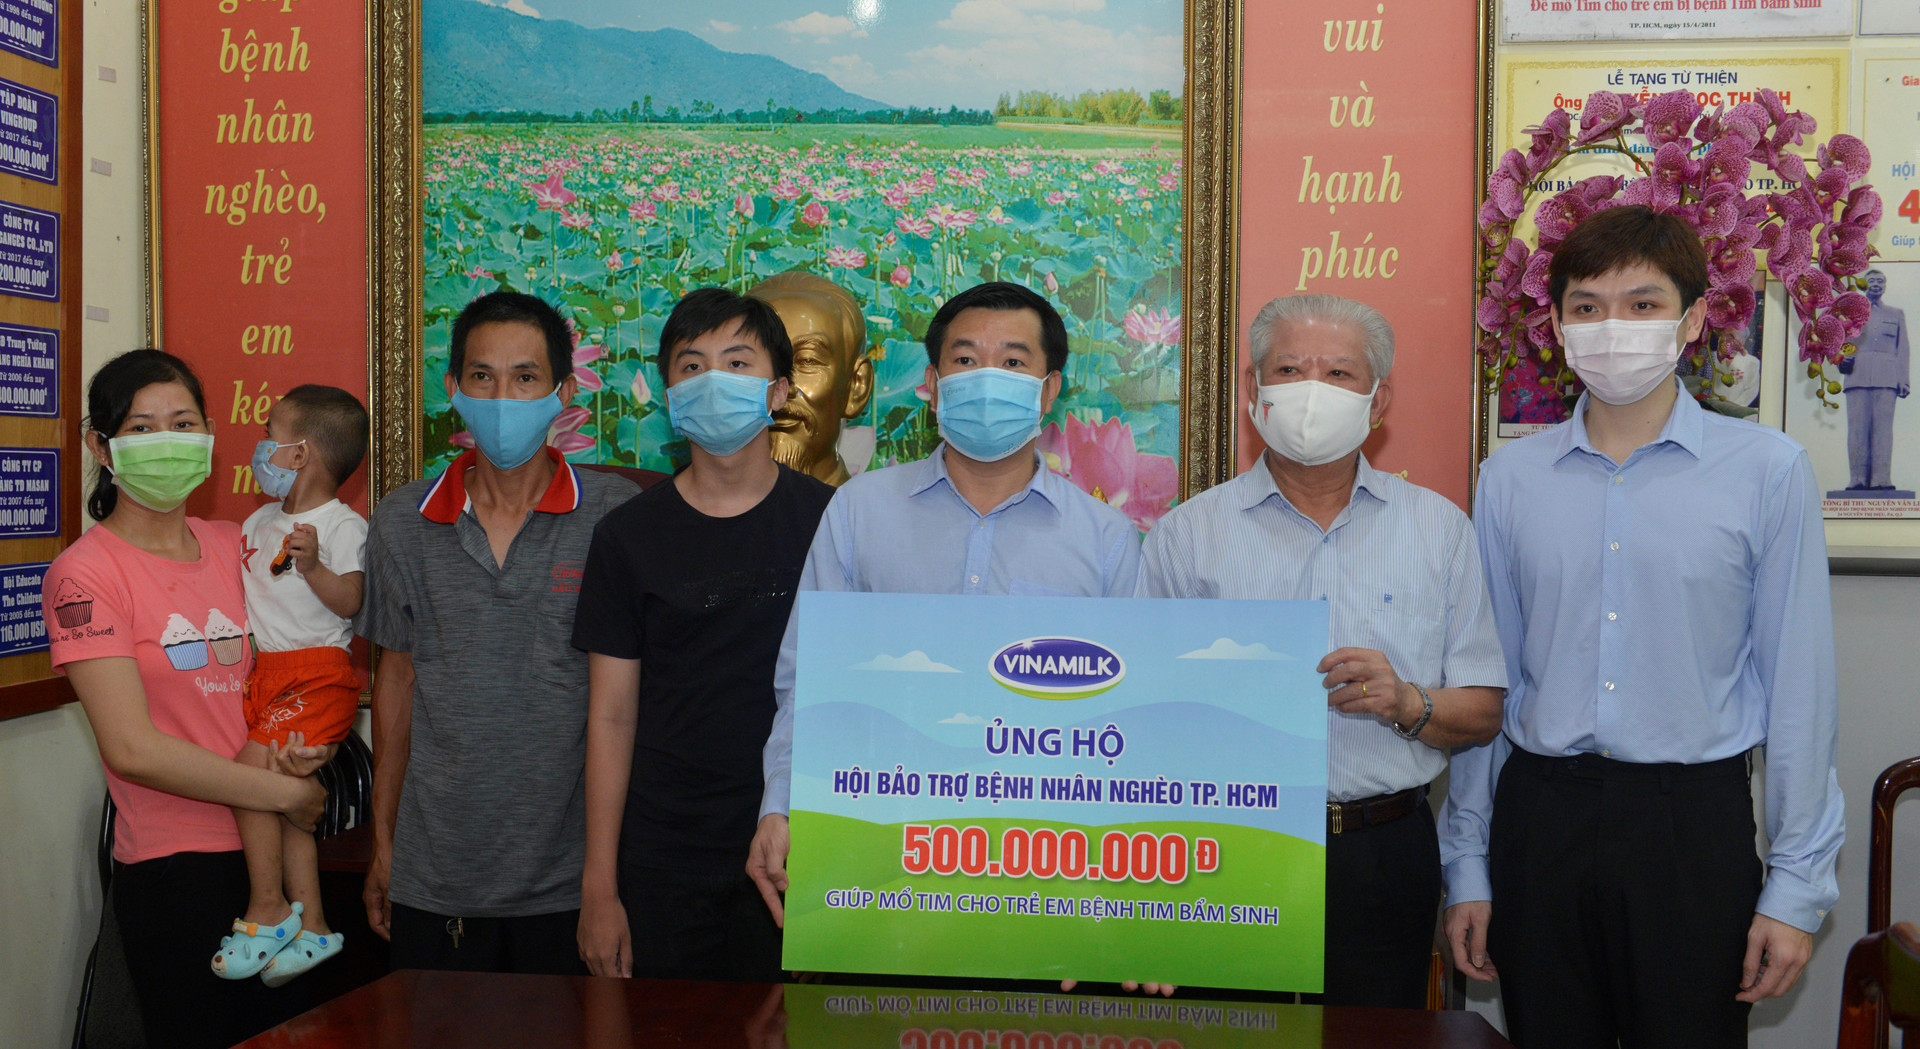 Ông Đỗ Thanh Tuấn, Giám đốc Đối ngoại công ty Vinamilk trao tặng kinh phí mổ tim cho trẻ em có hoàn cảnh khó khăn đến Hội Bảo trợ Bệnh nhân nghèo TP HCM.